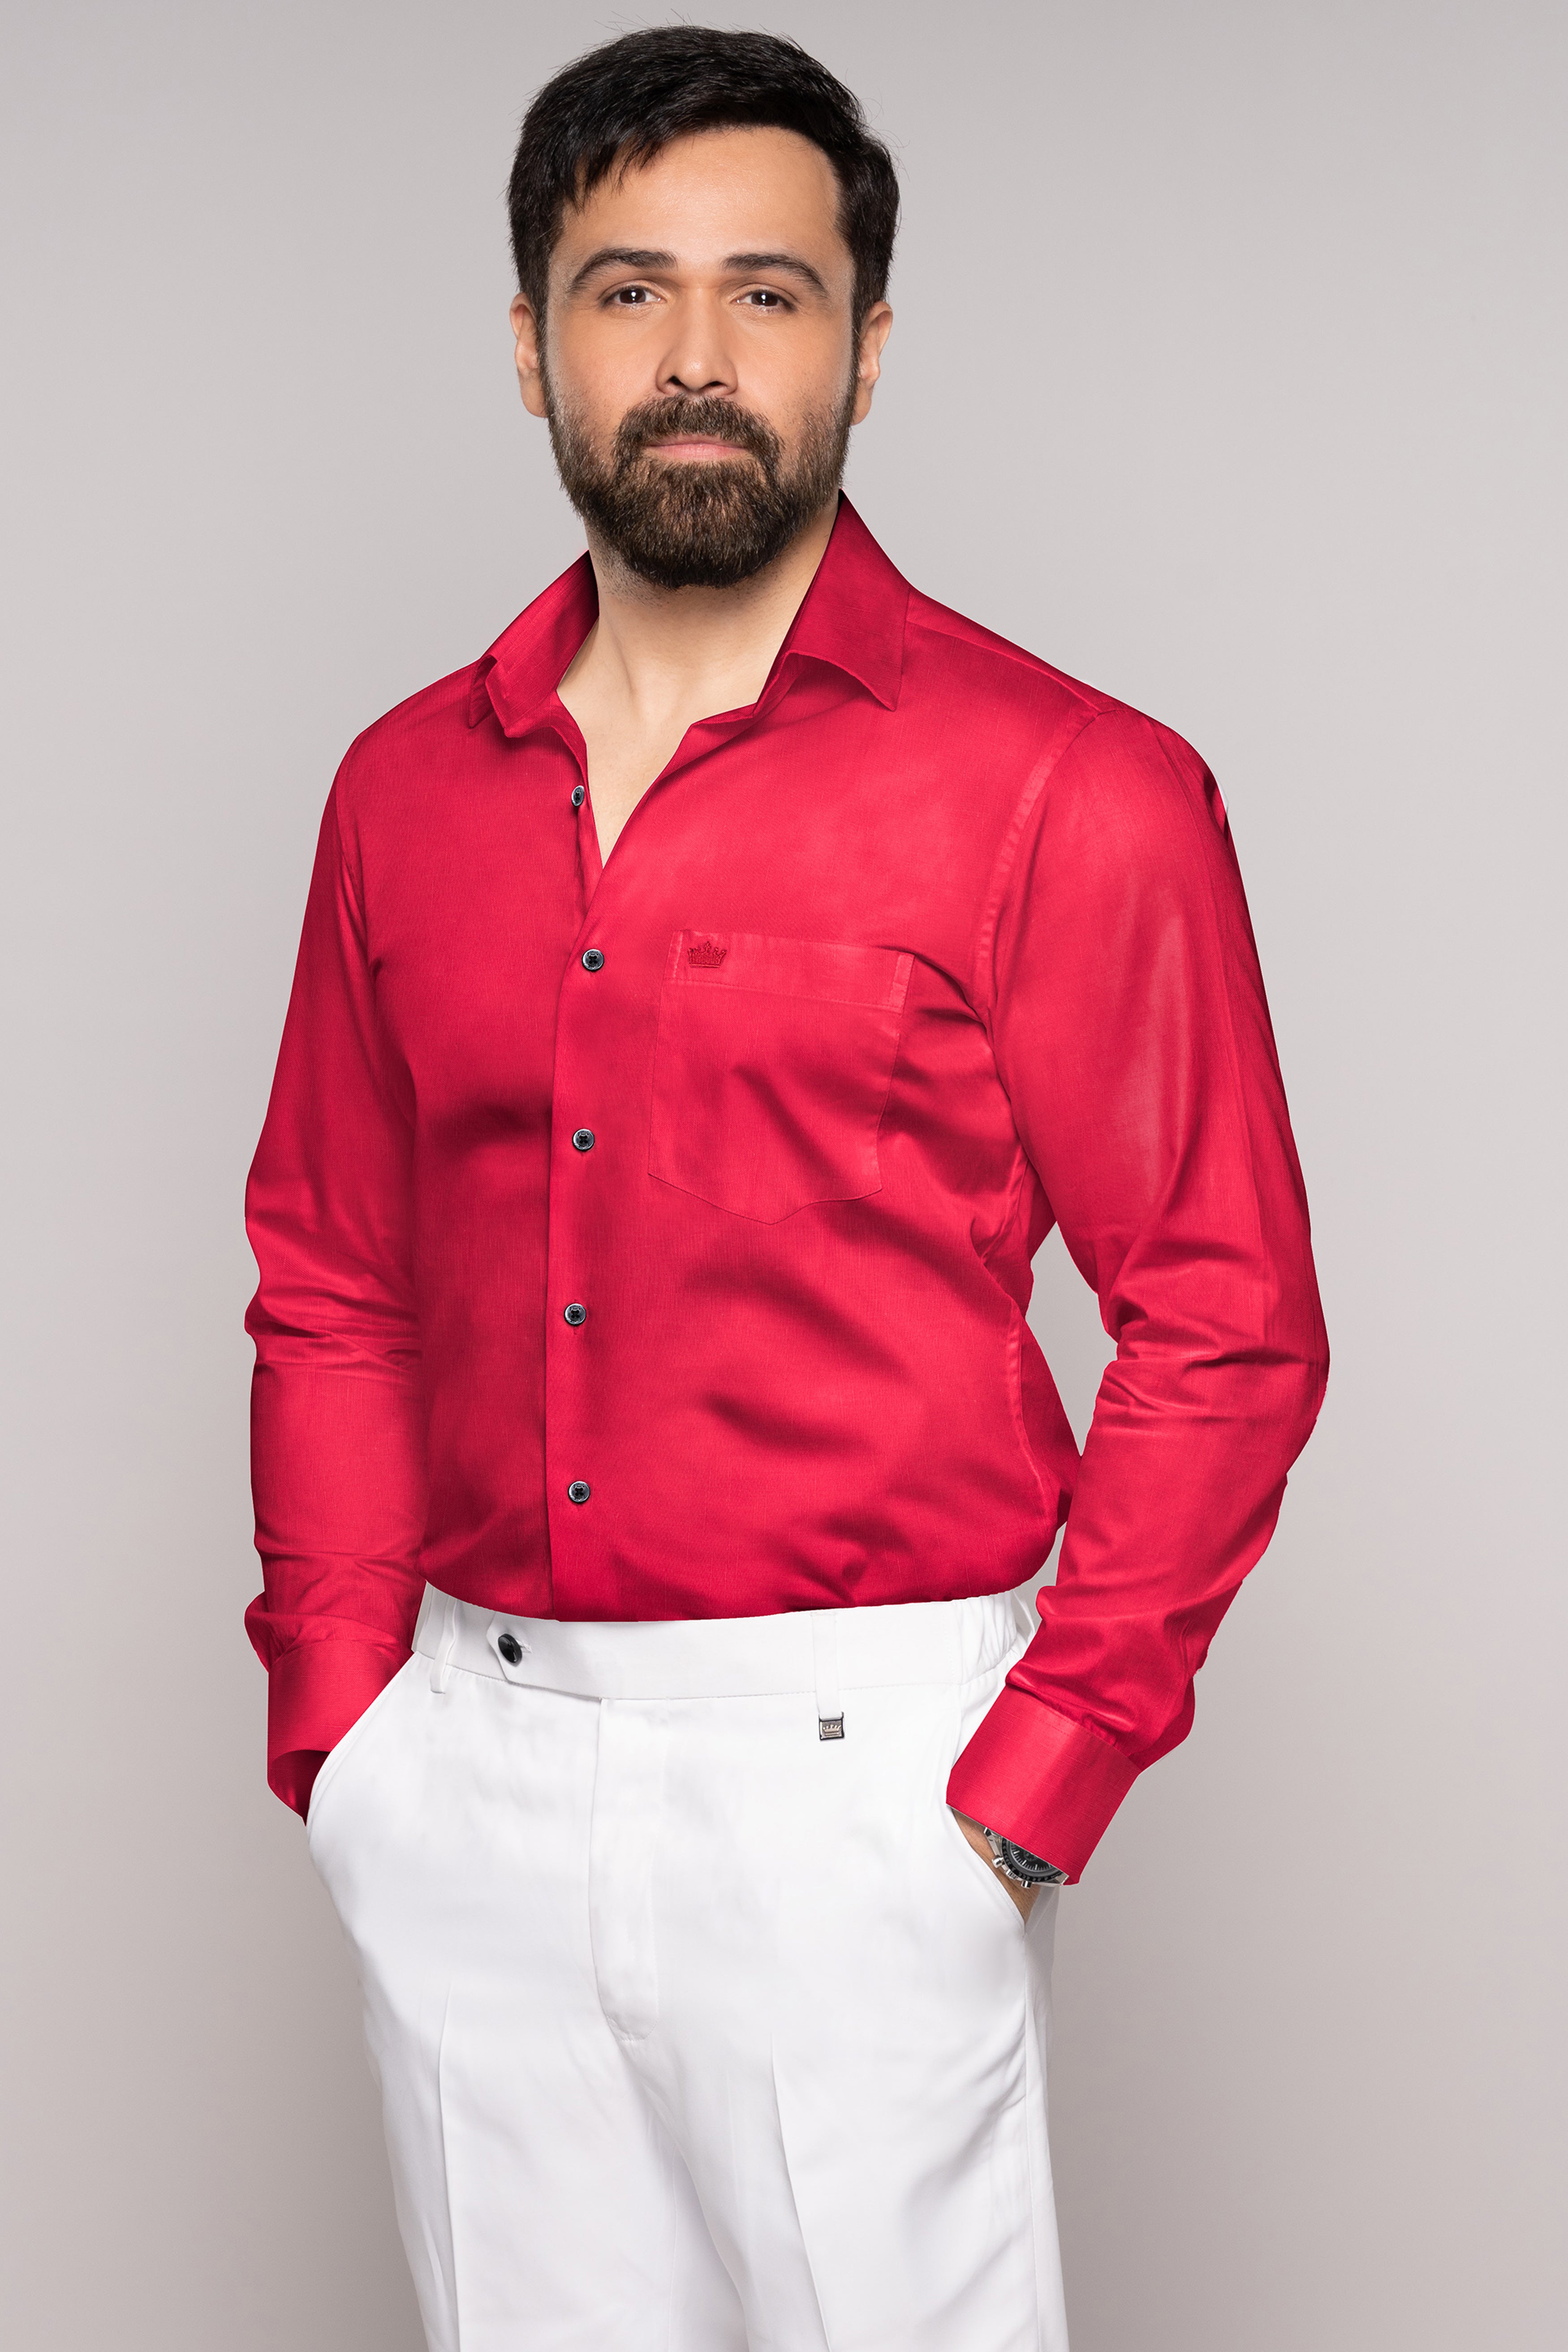 Cardinal Red Luxurious Linen Shirt